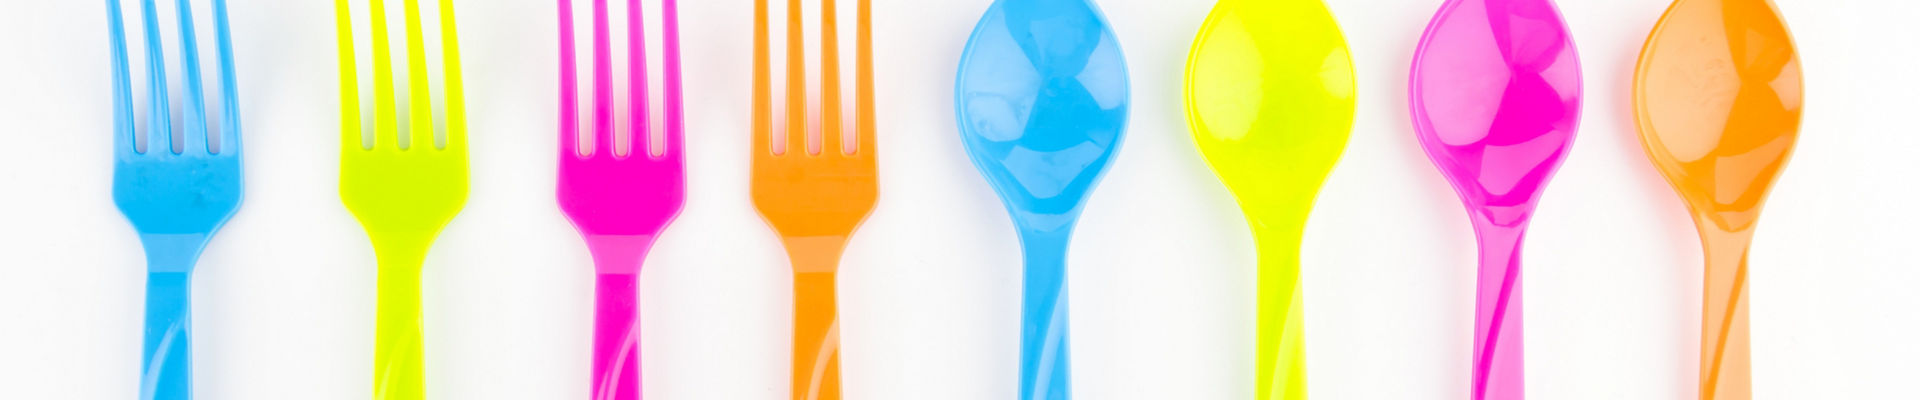 一排霓虹色勺子和叉子摆在白色桌布上 